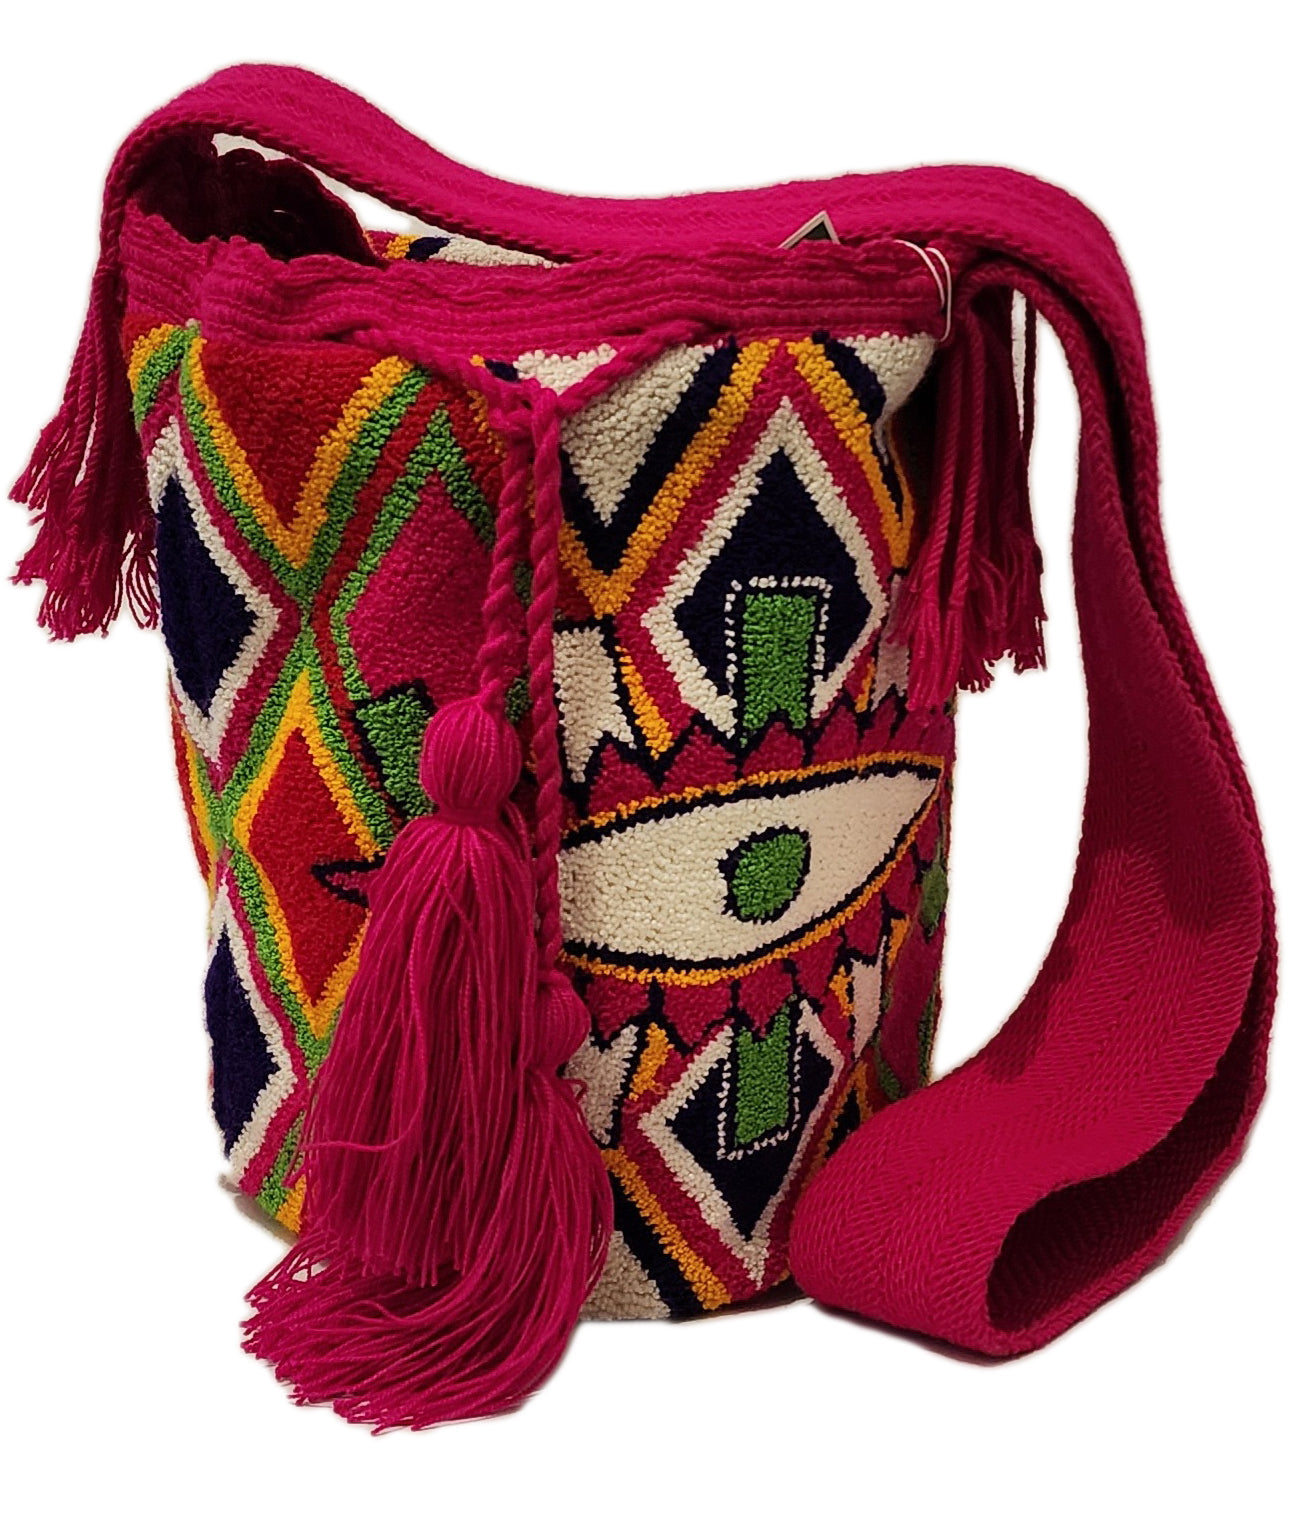 Sutton Large Fluffy Handmade Wayuu Mochila Bag - Las Ofrendas 